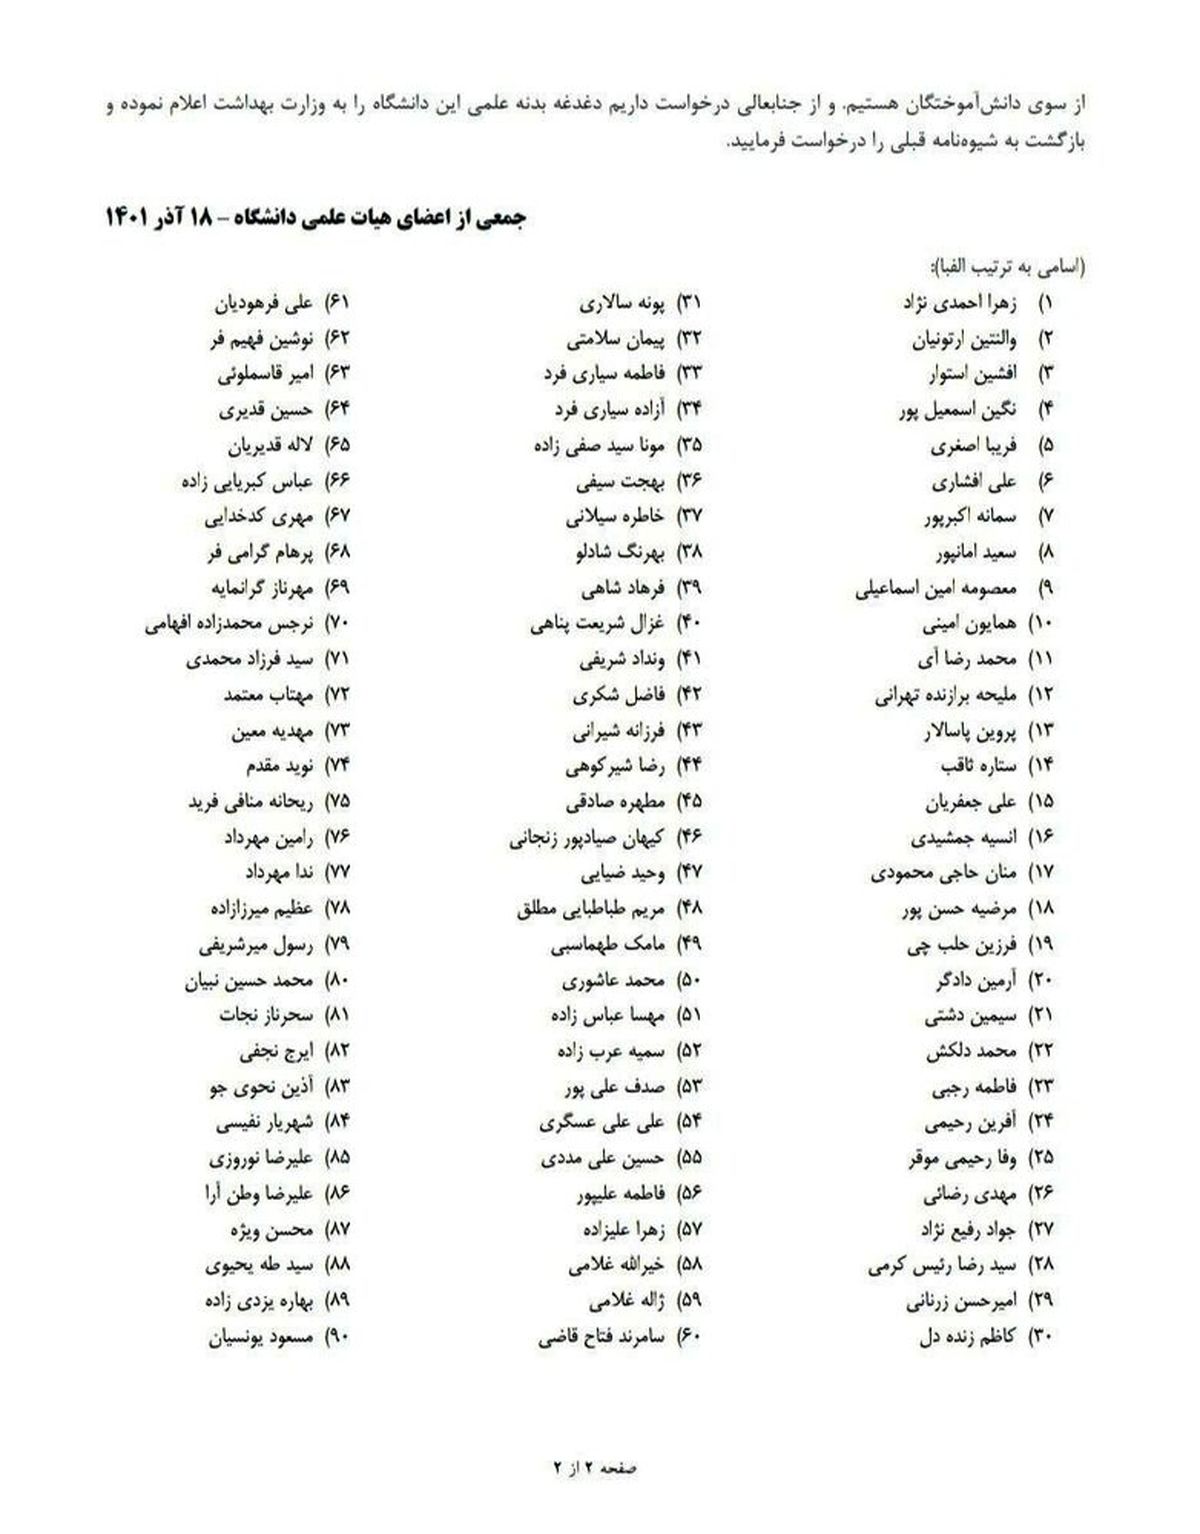 نامه اعتراضی ۹۰ استاد دانشگاه علوم پزشکی تهران به رییس دانشگاه+ اسامی